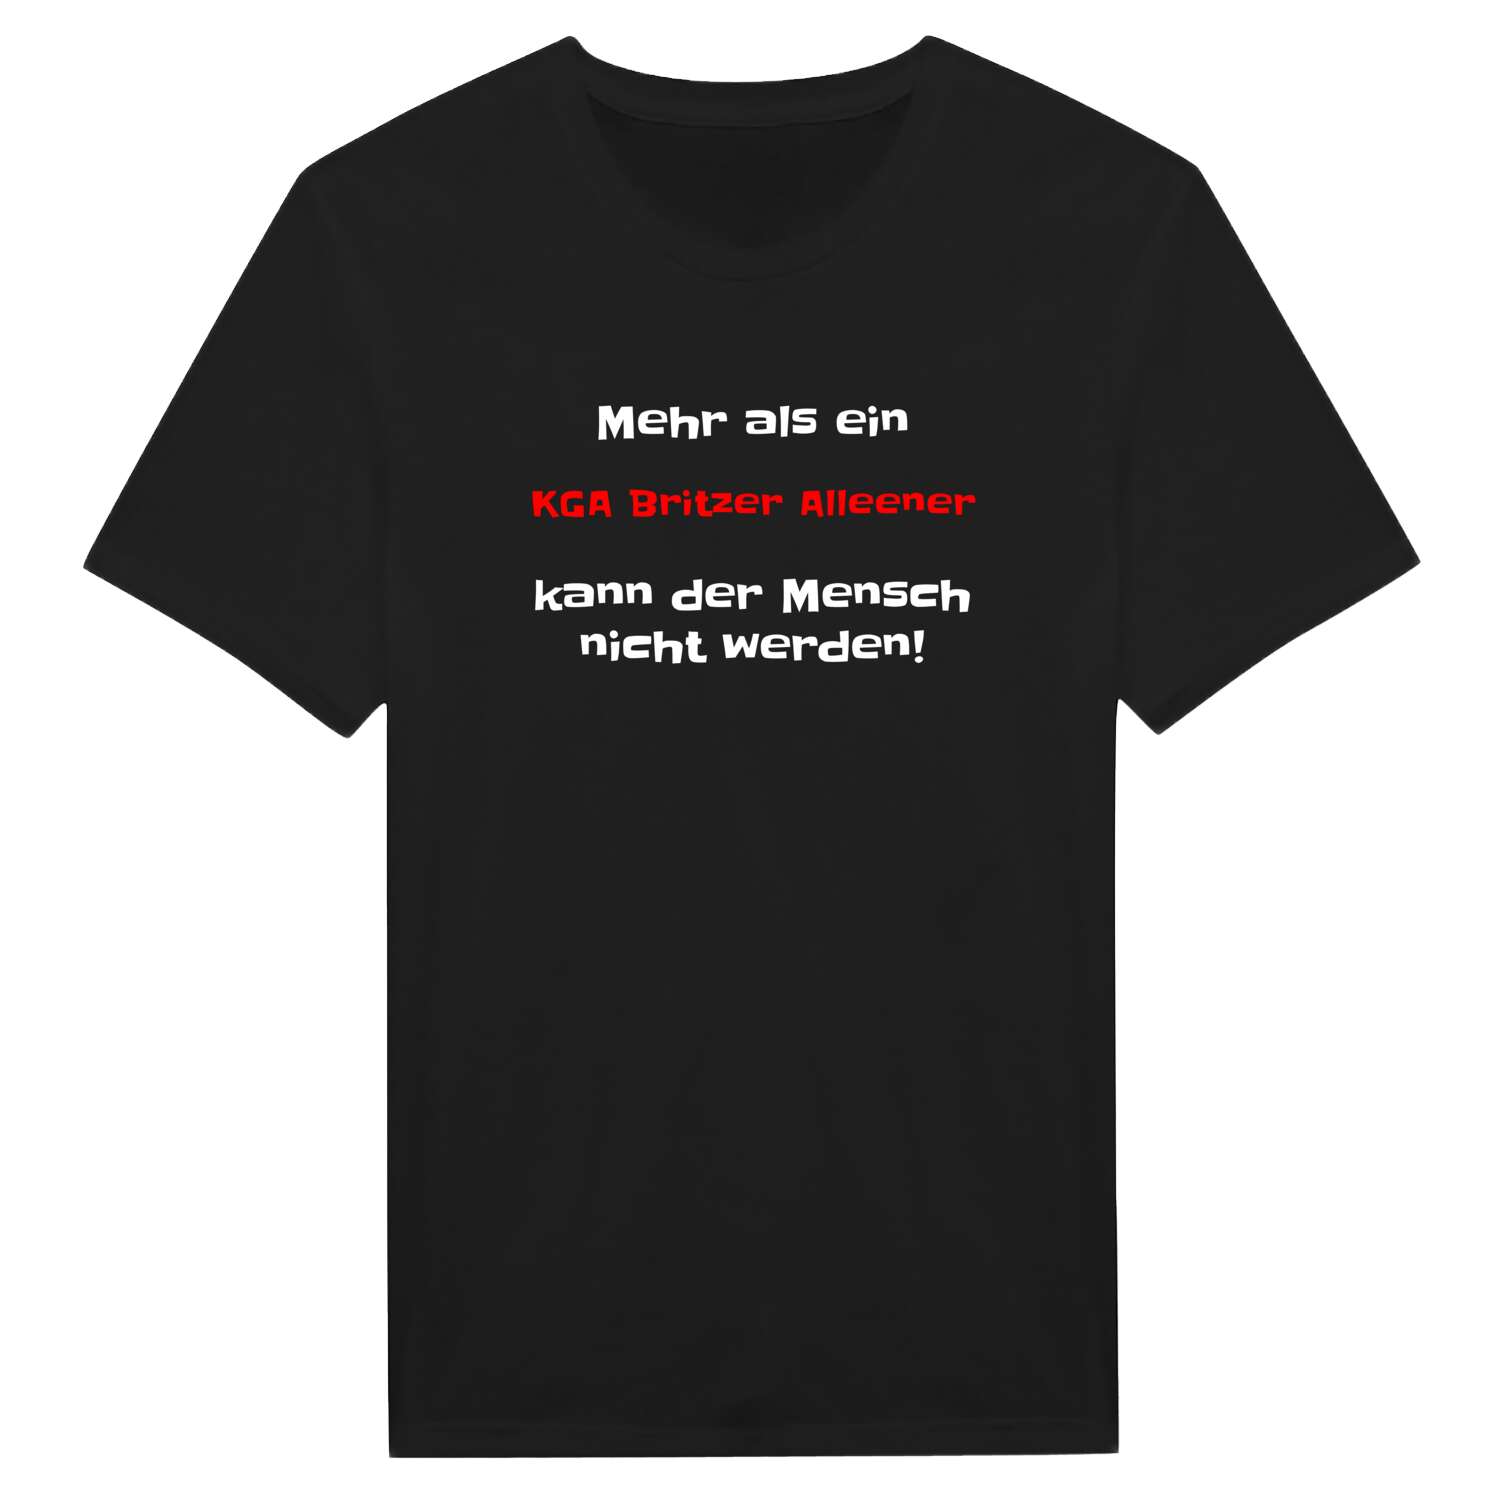 KGA Britzer Allee T-Shirt »Mehr als ein«